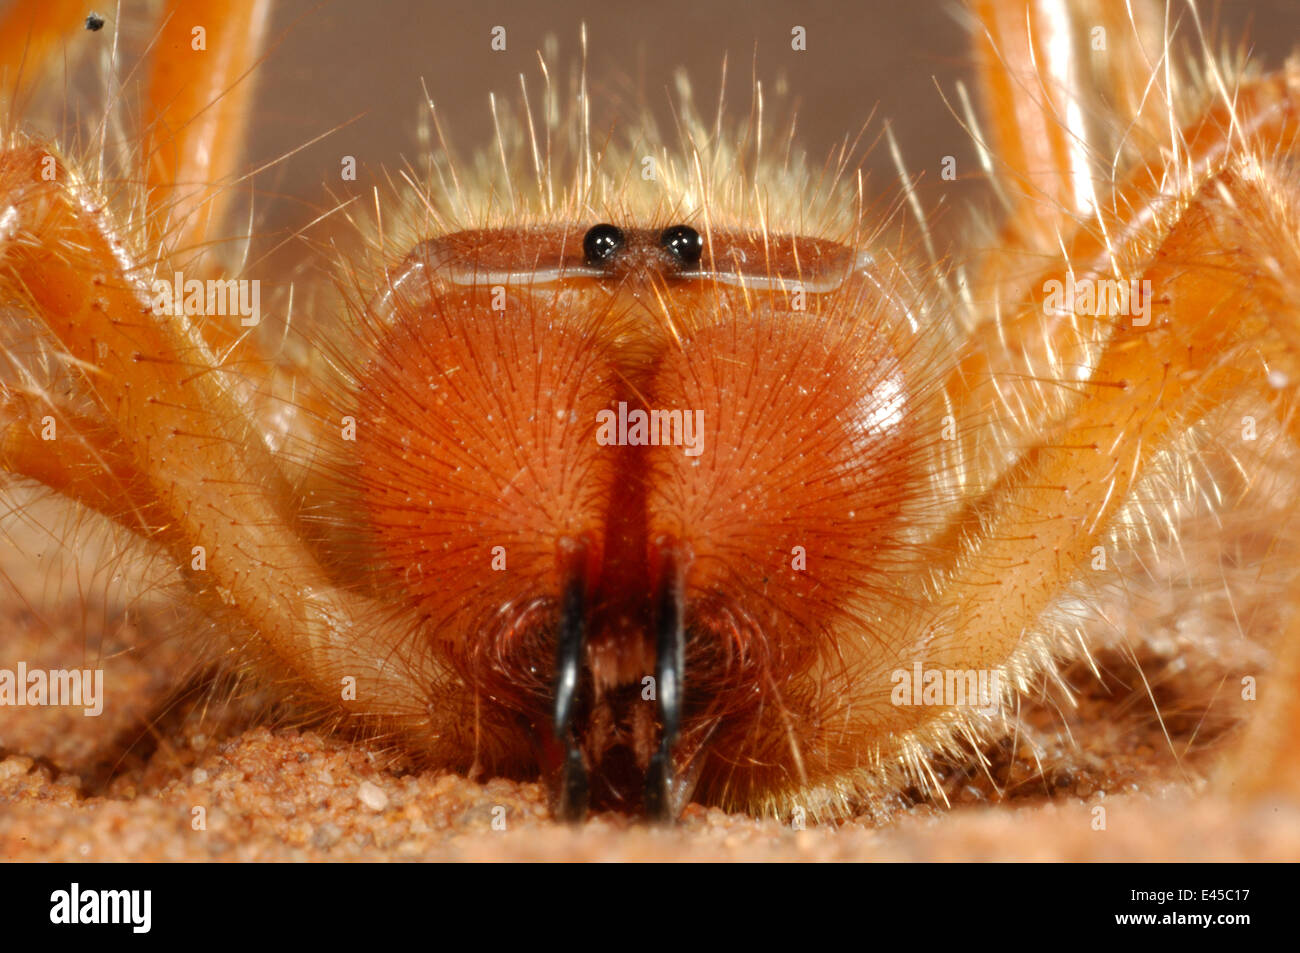 Camel spider / Wind scorpion {Solifugae} close up of mouthparts, Namib Desert, Namibia Stock Photo